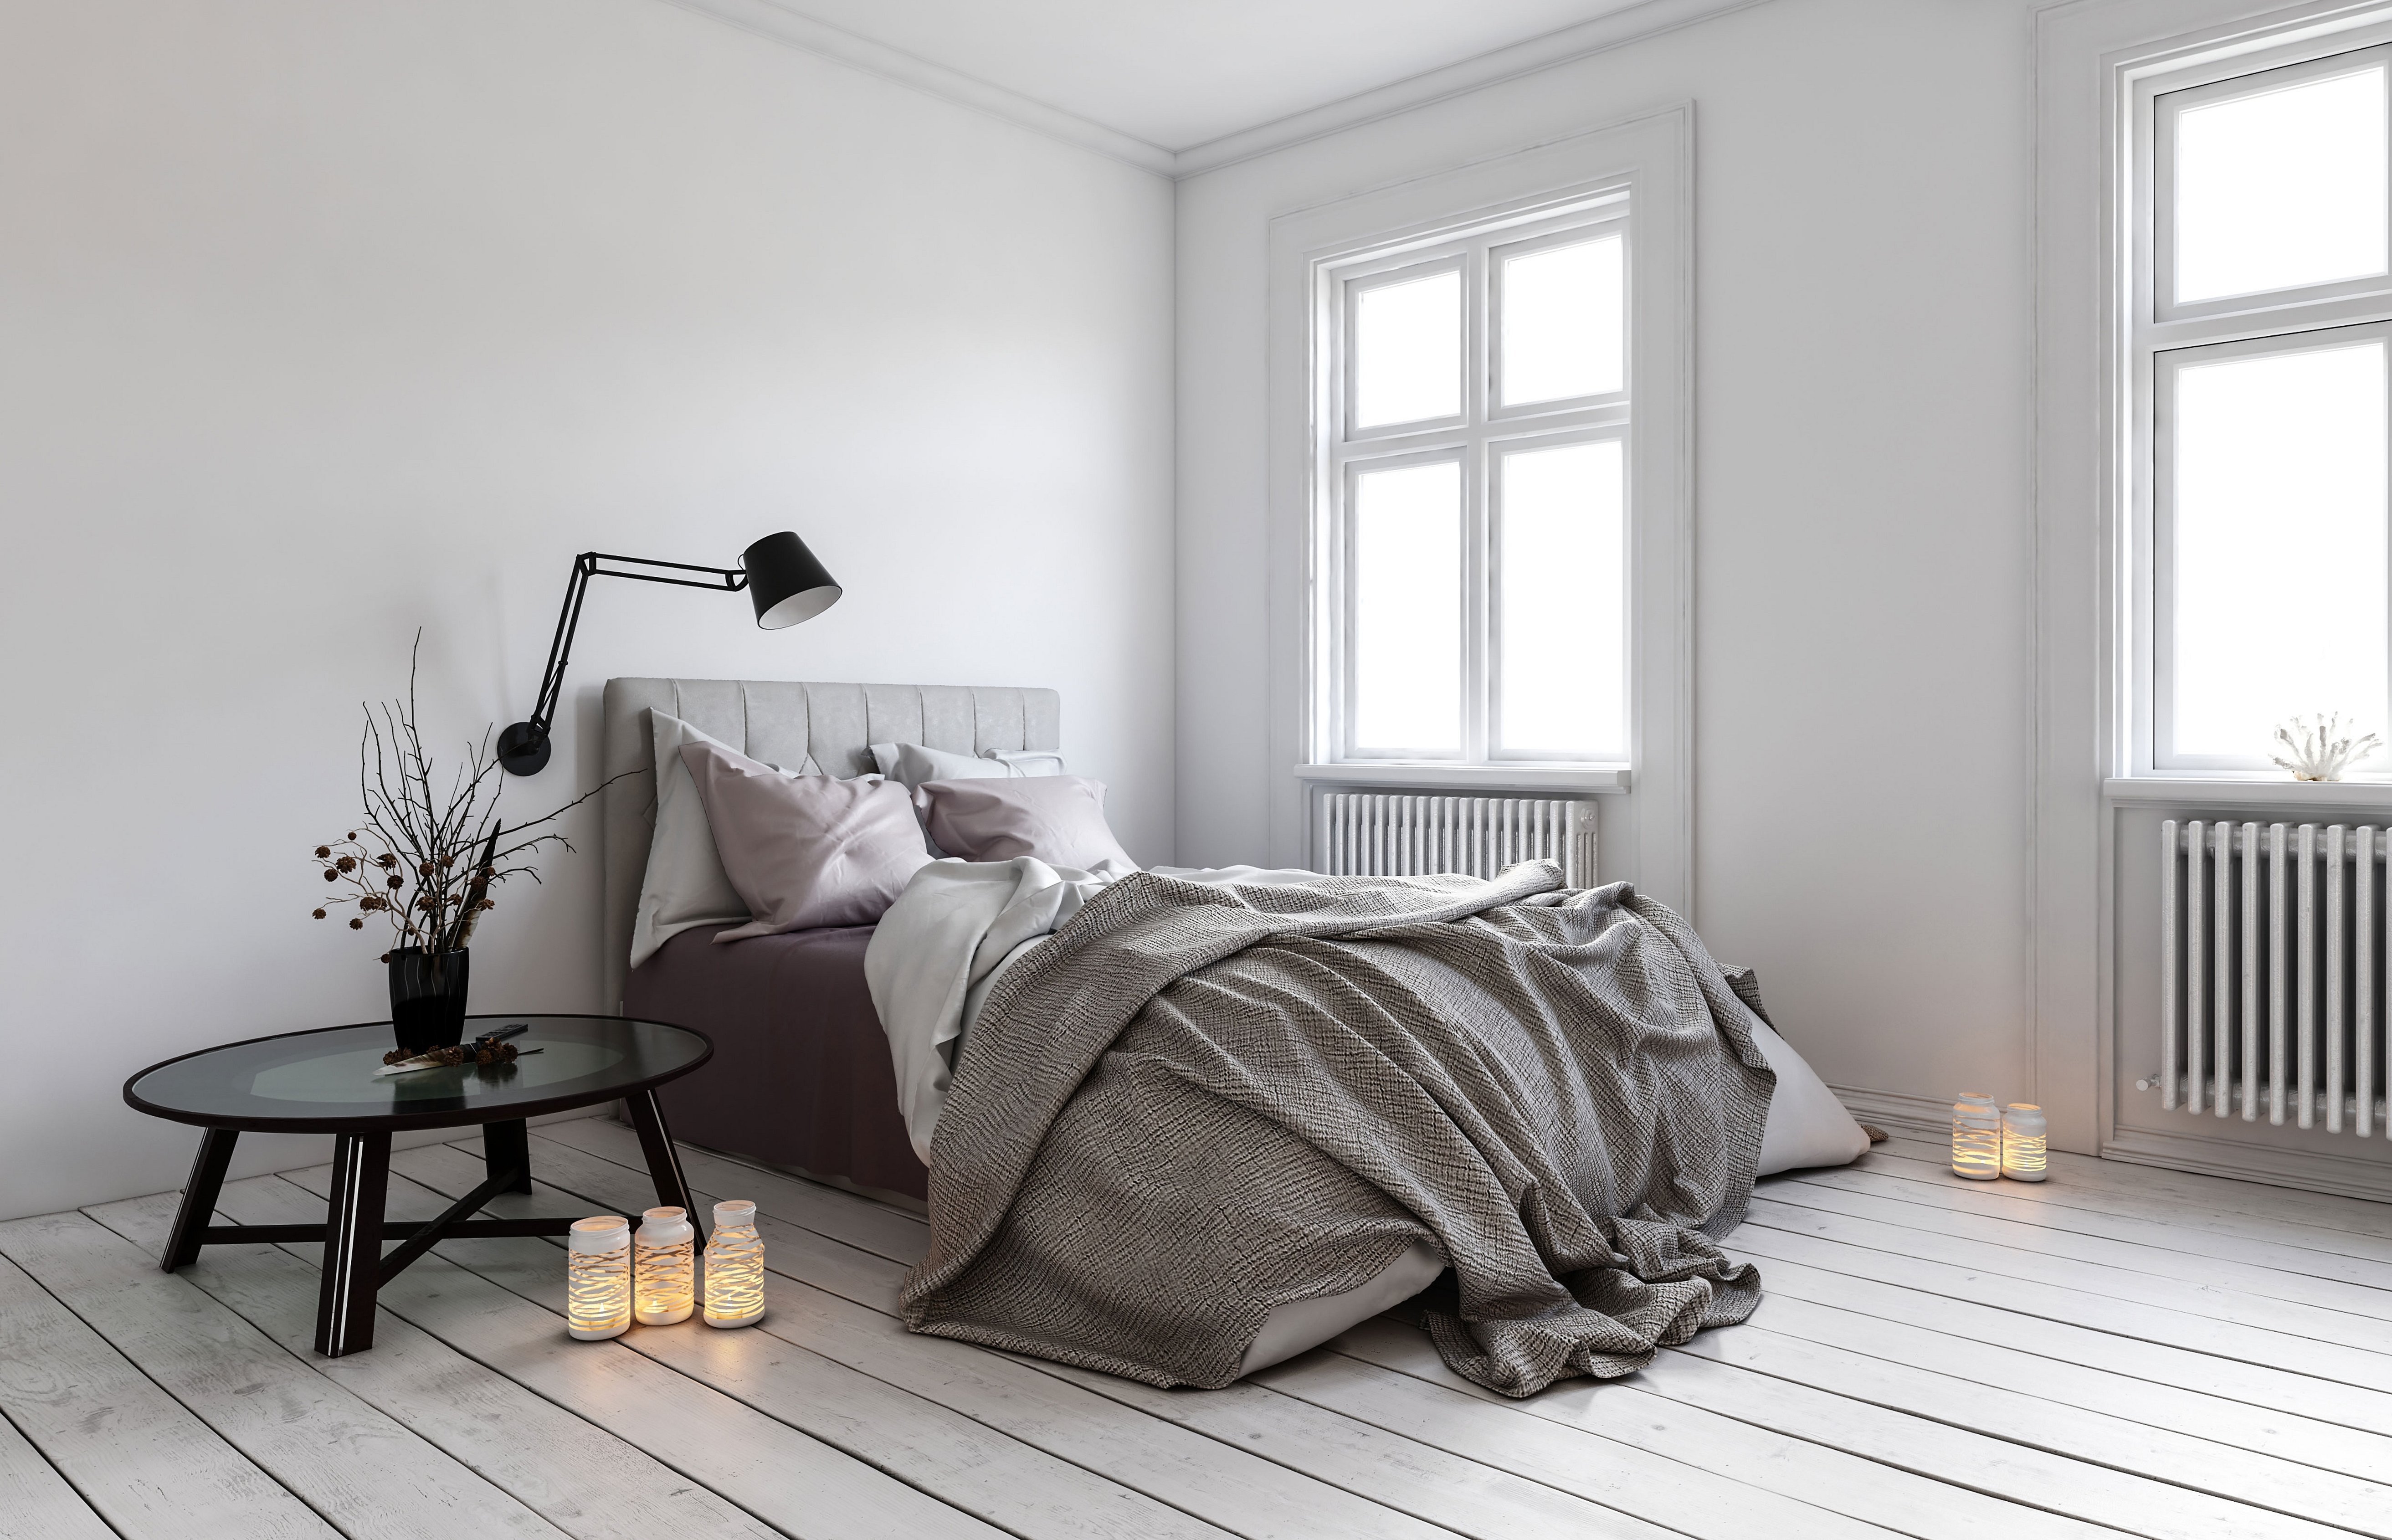 Интерьер комнаты спальни шведский стиль